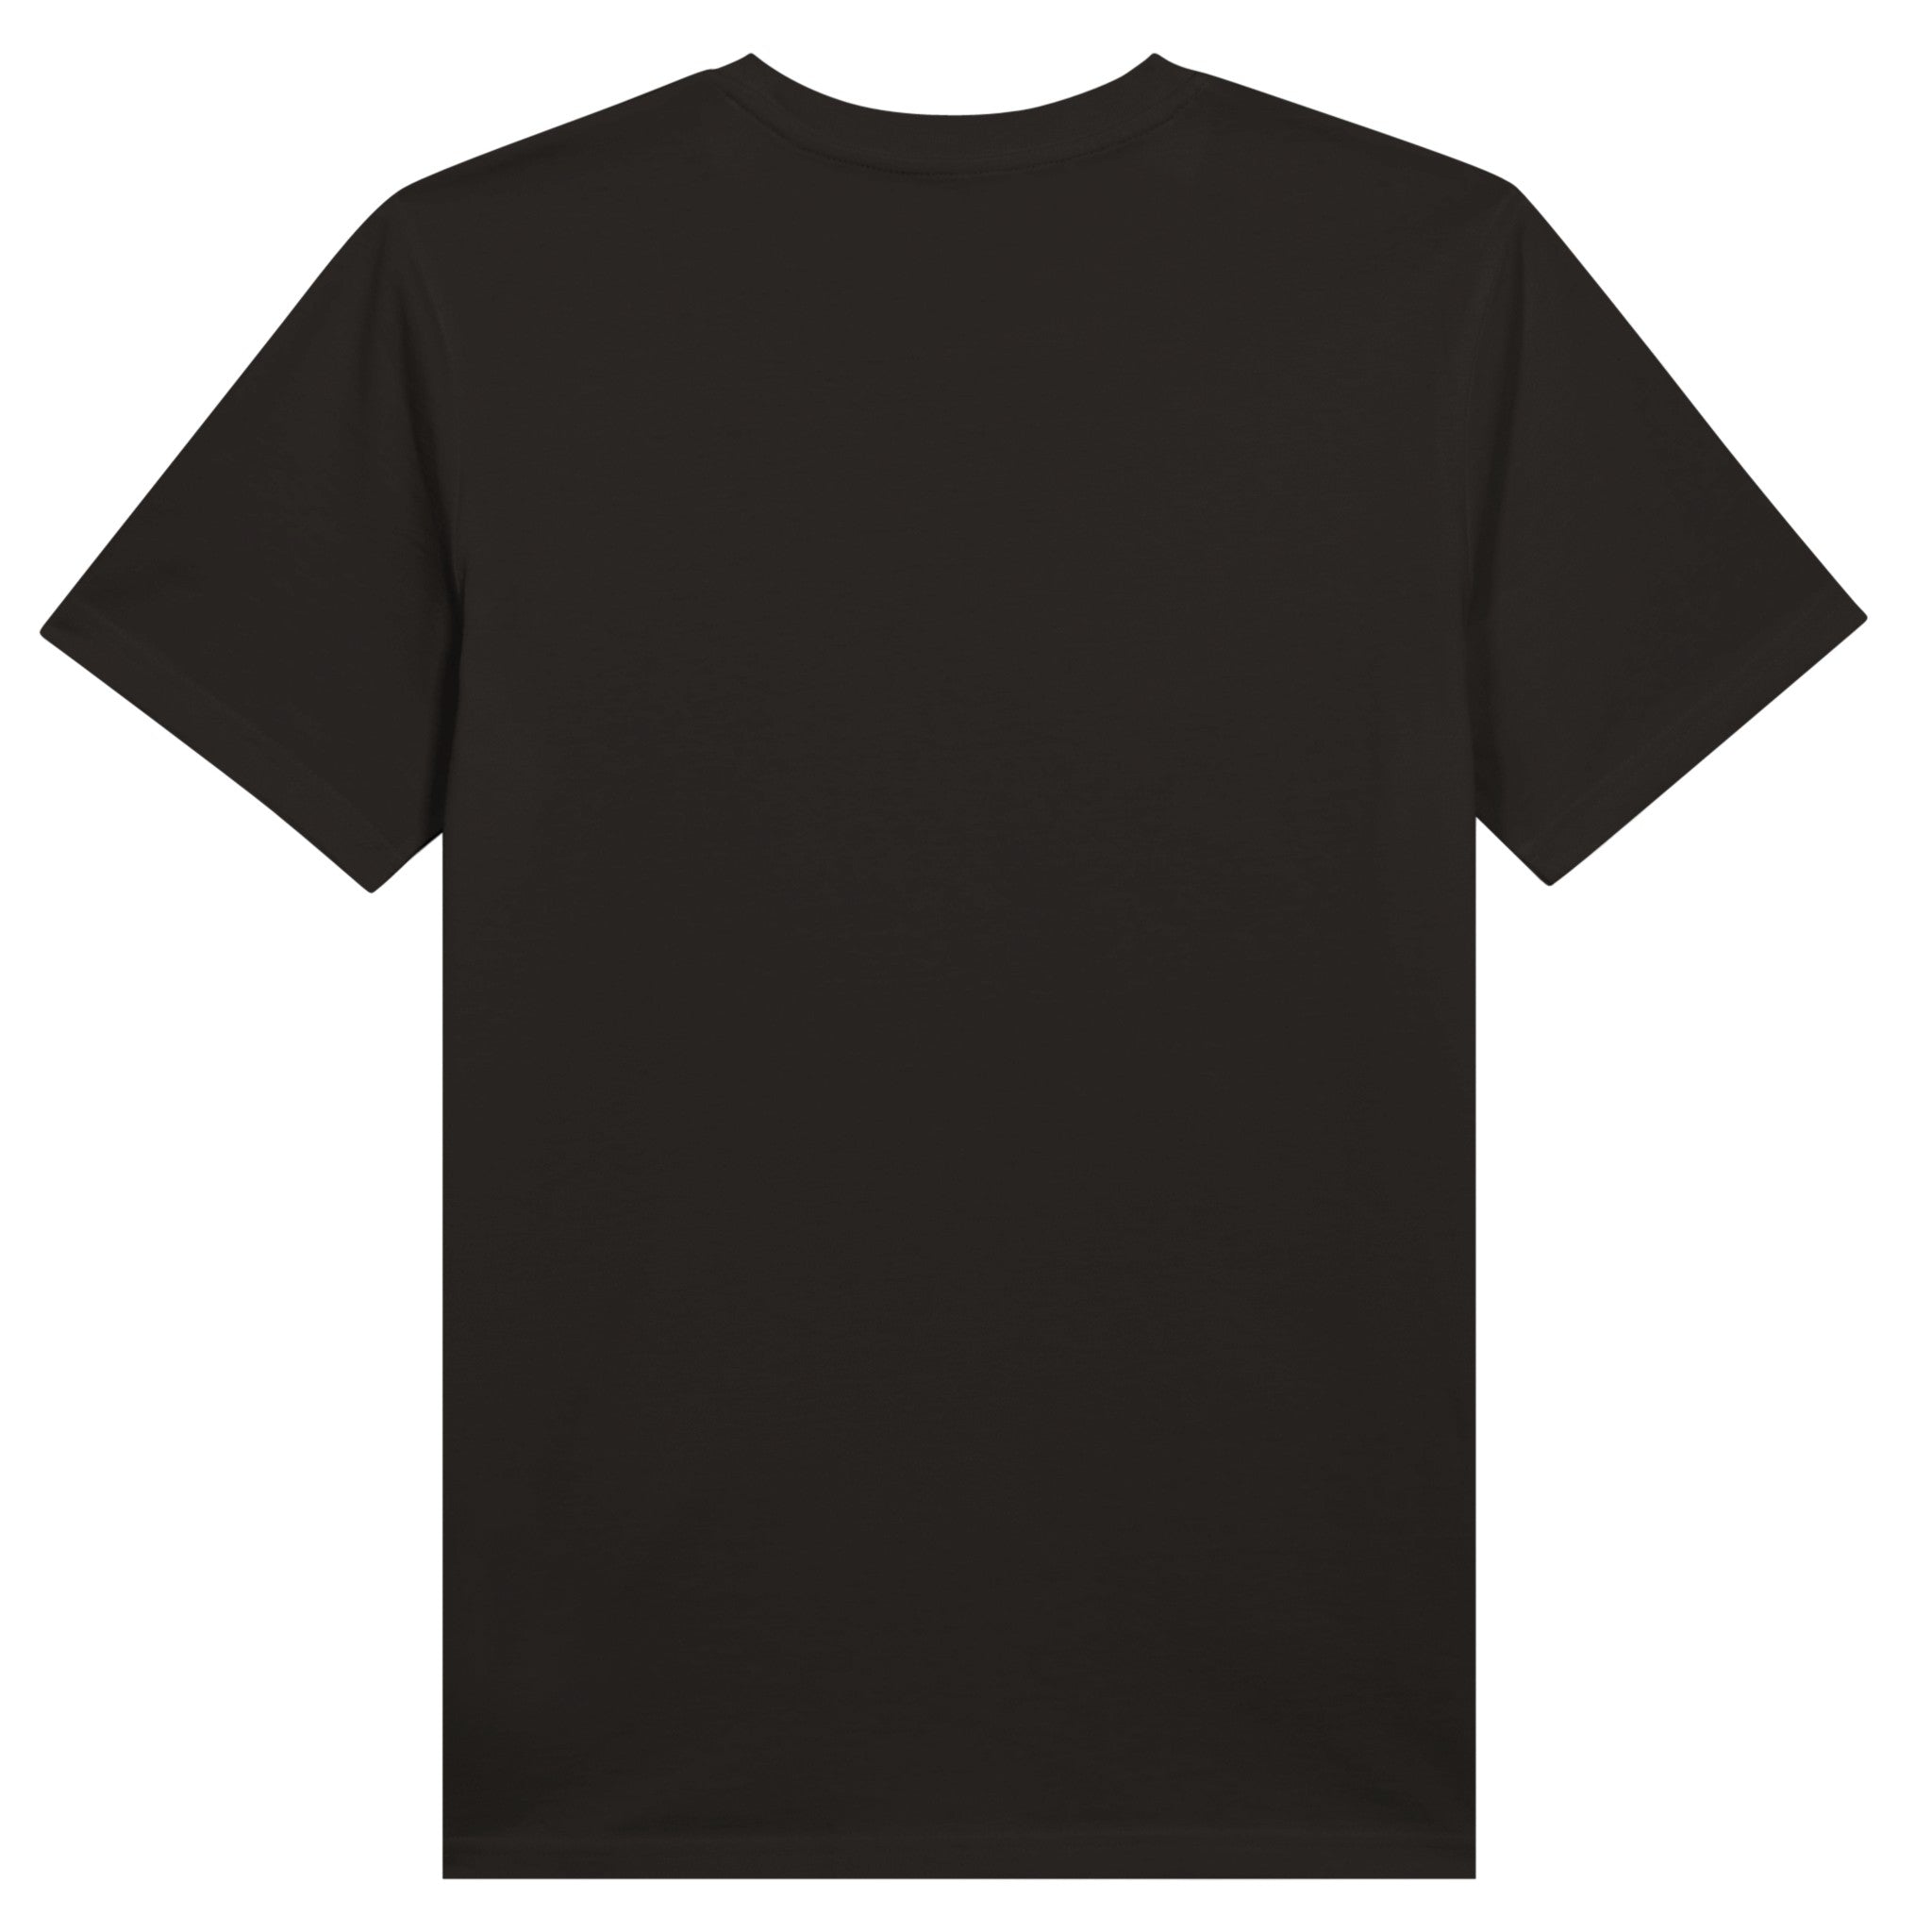 Tennis T-Shirt GOAT Cyr. Edition - FURYCRY® | Tennis & Streetwear Apparel